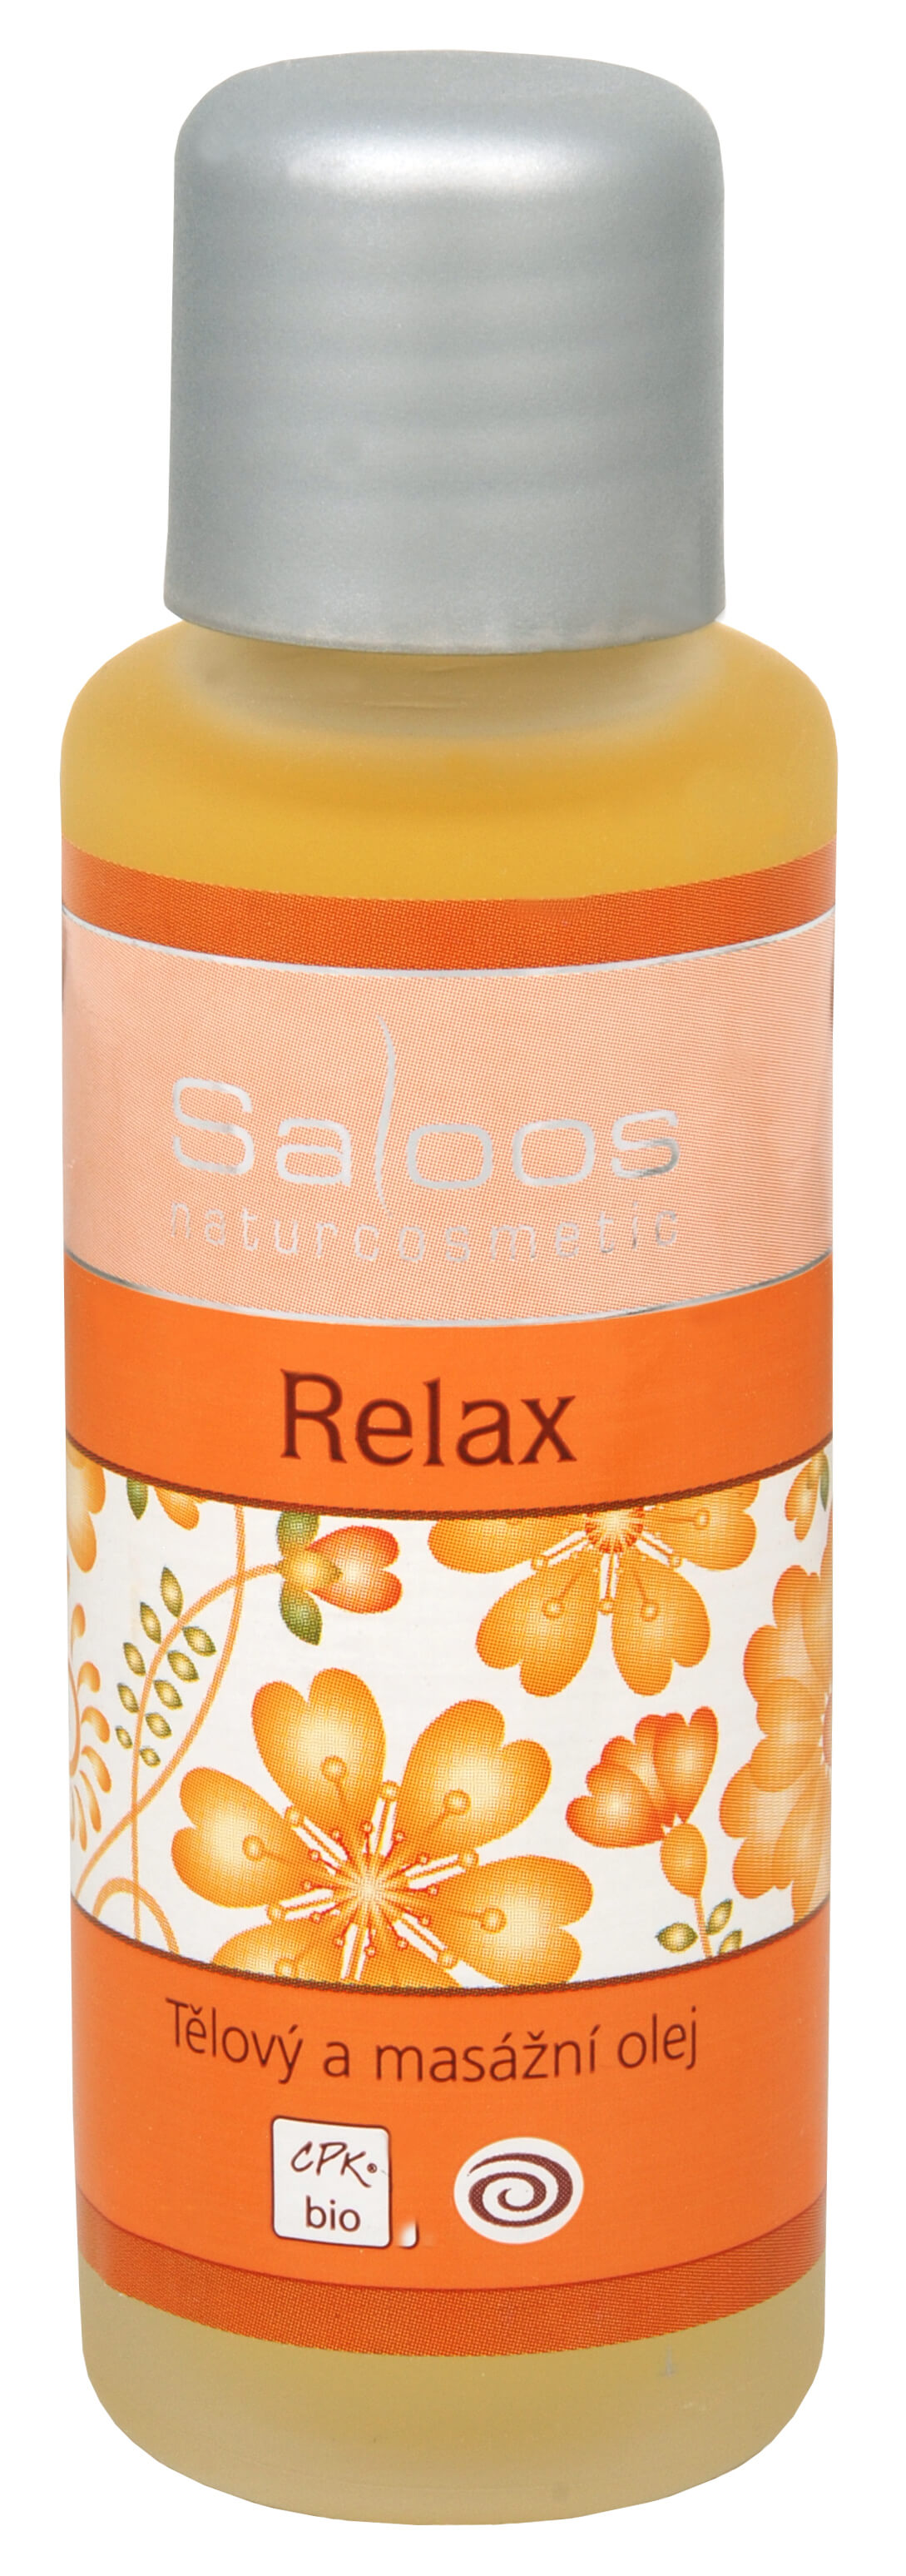 Zobrazit detail výrobku Saloos Bio tělový a masážní olej - Relax 125 ml + 2 měsíce na vrácení zboží